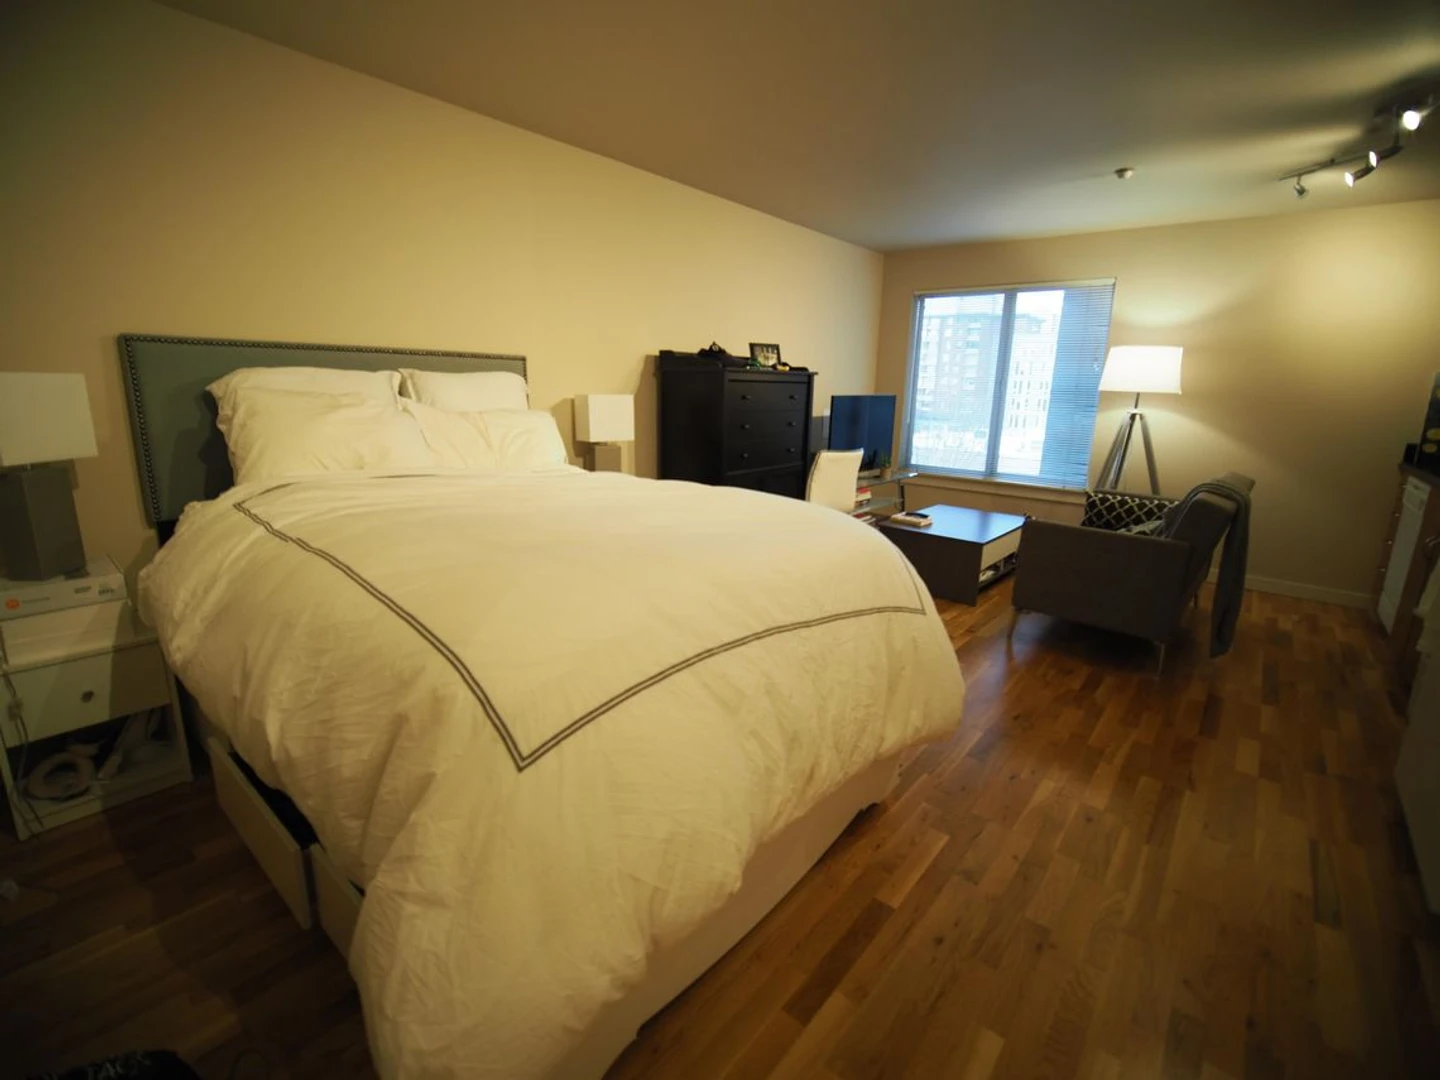 Seattle de çift kişilik yataklı kiralık oda